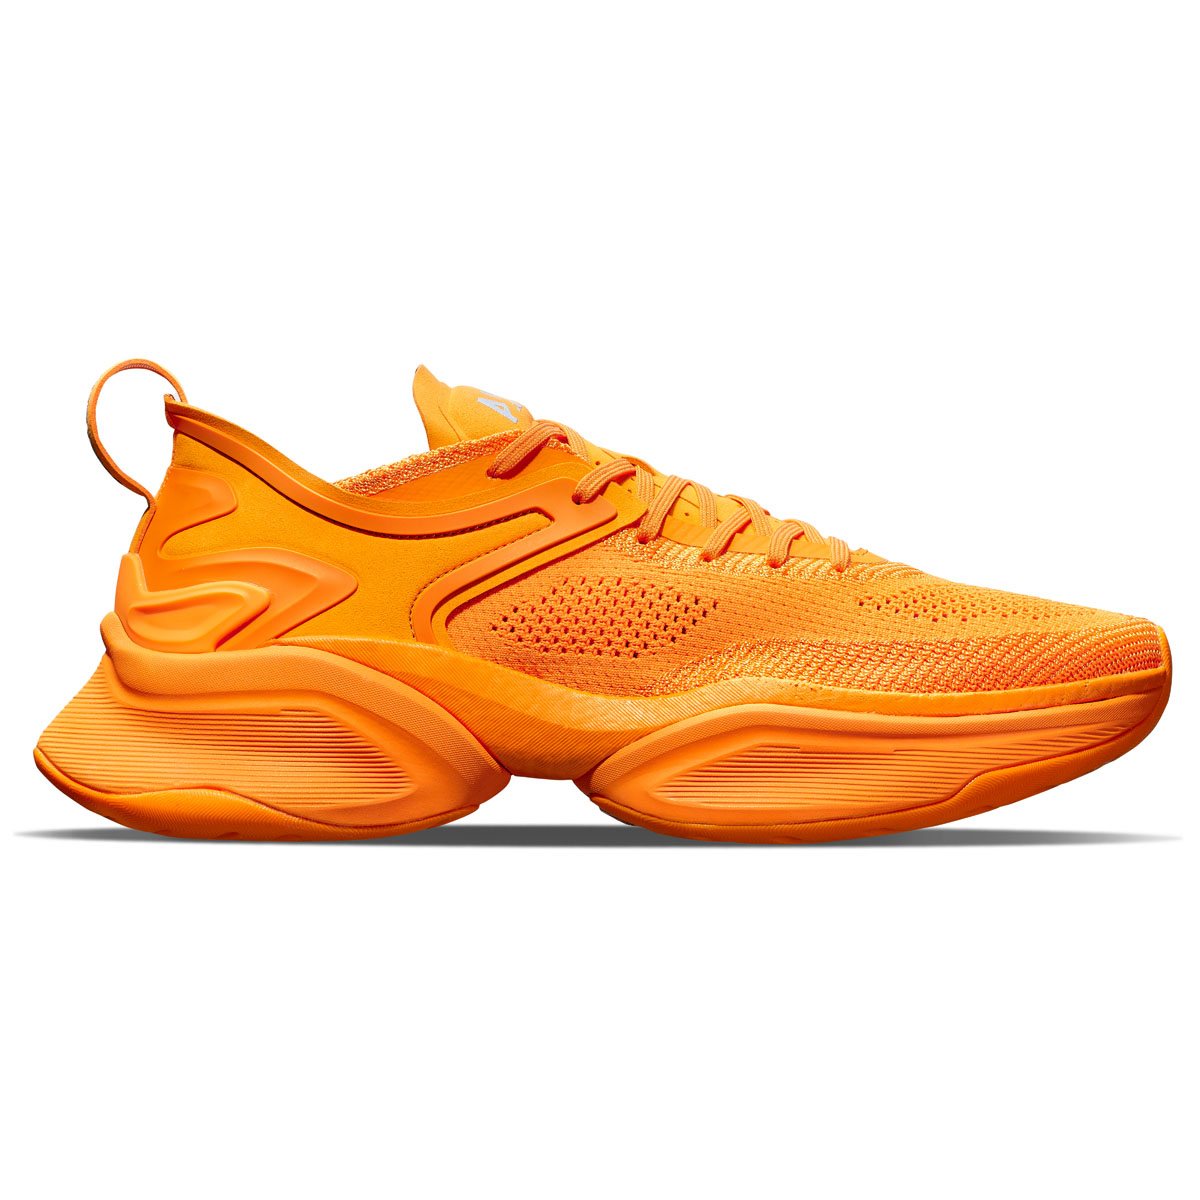 apl x mclaren highspeed shoe in orange